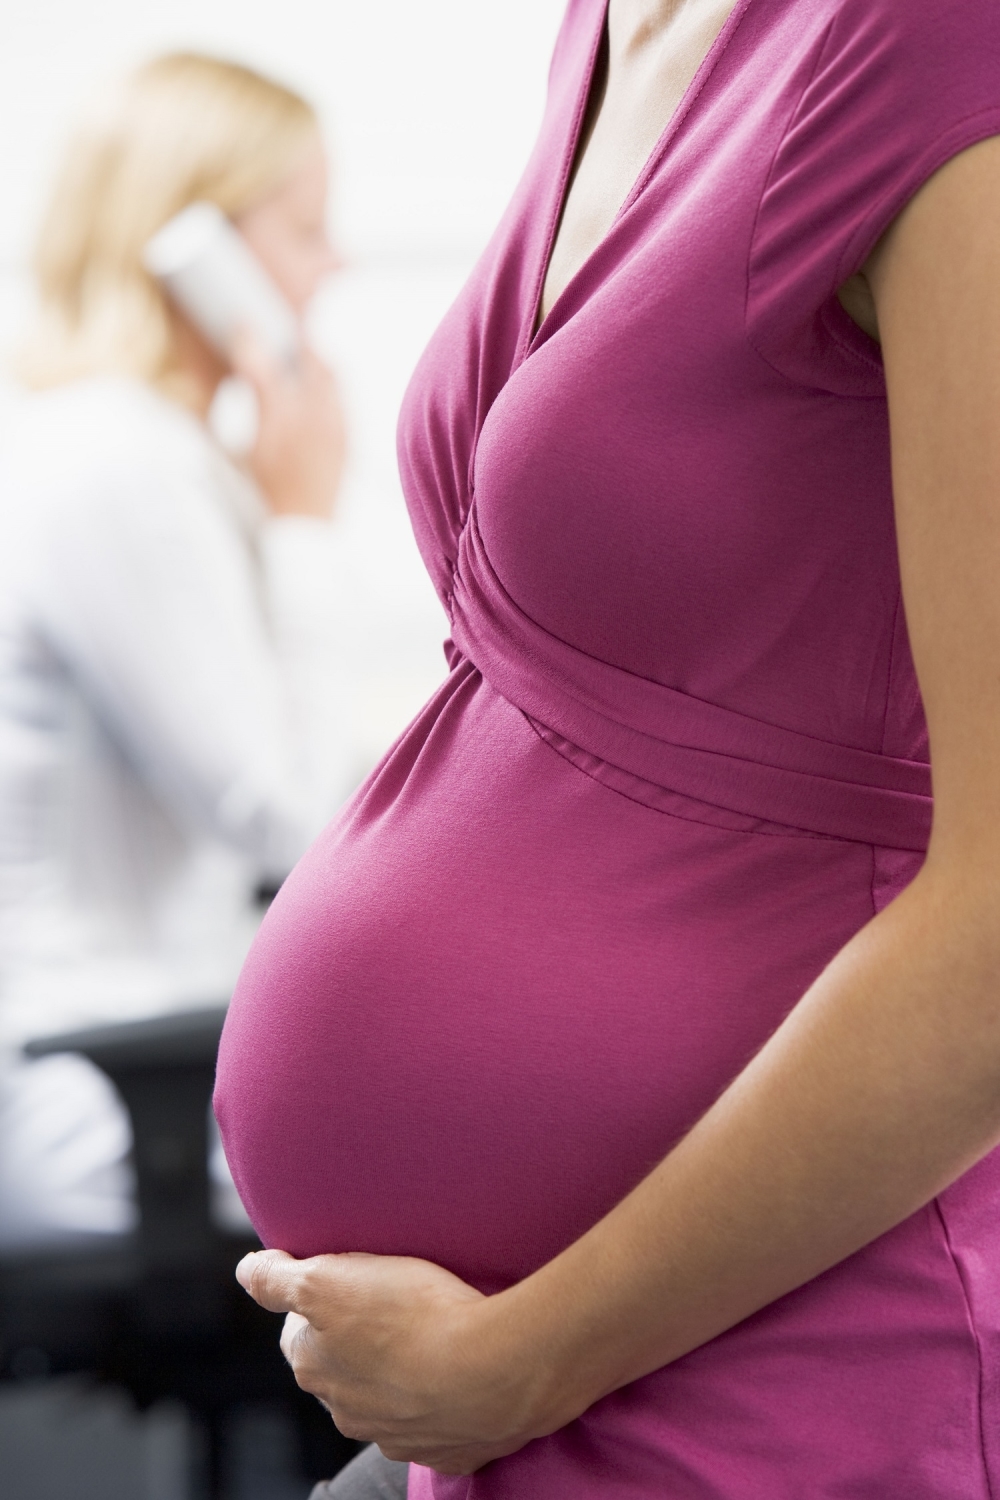 Comment gérer le boulot pendant la grossesse ?